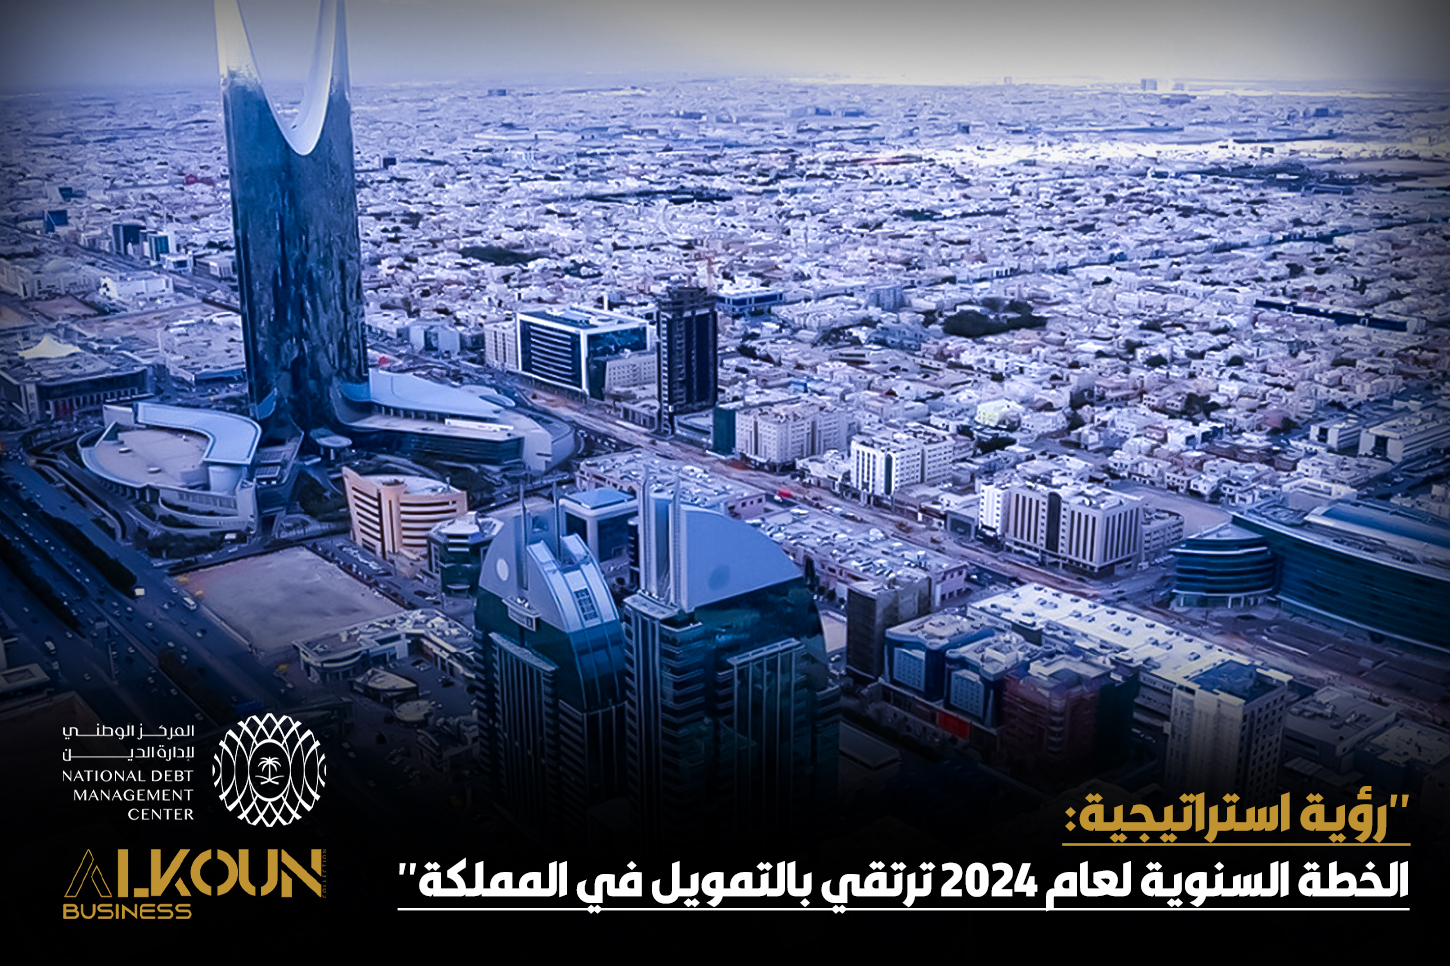 "رؤية استراتيجية: الخطة السنوية لعام 2024 ترتقي بالتمويل في المملكة"